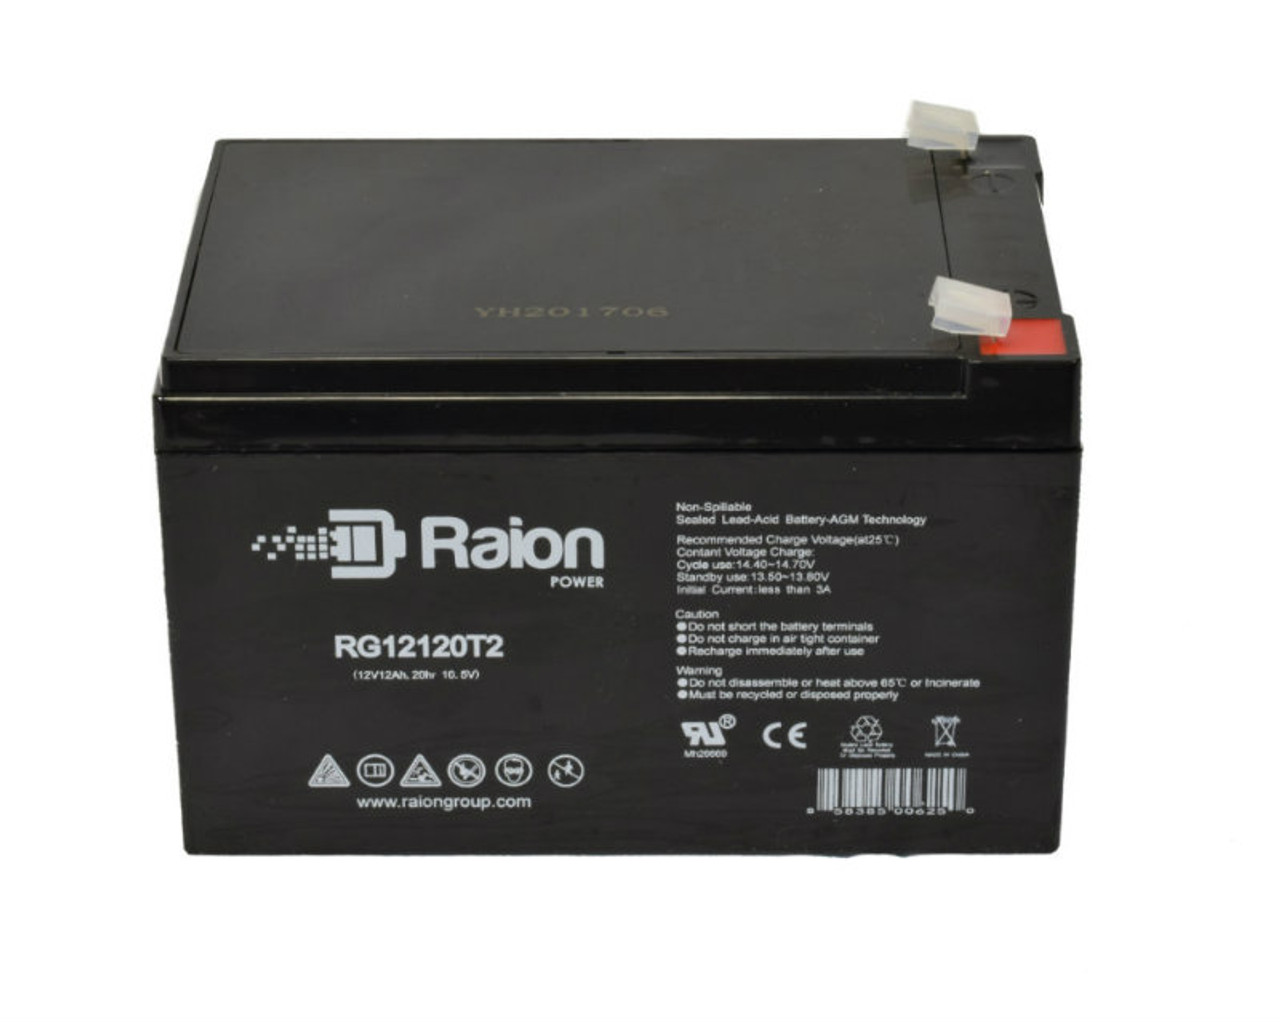 Raion Power RG12120T2 SLA Battery for Altronix AL1002UL2ADA